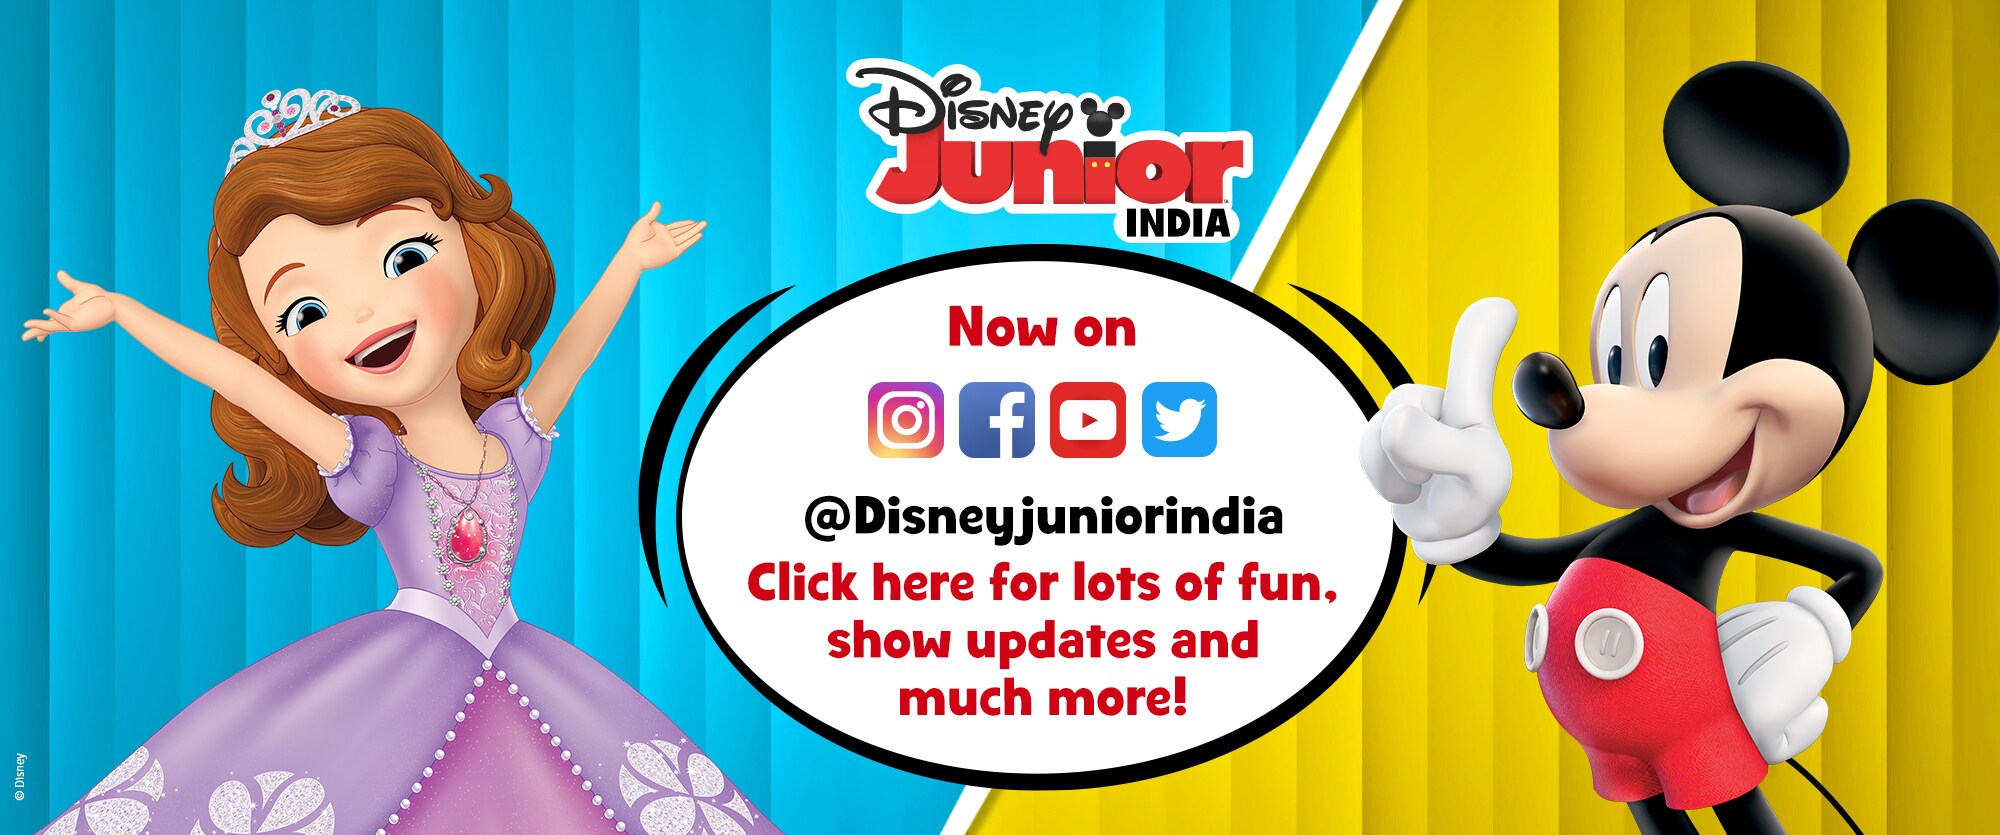 Disney Junior India